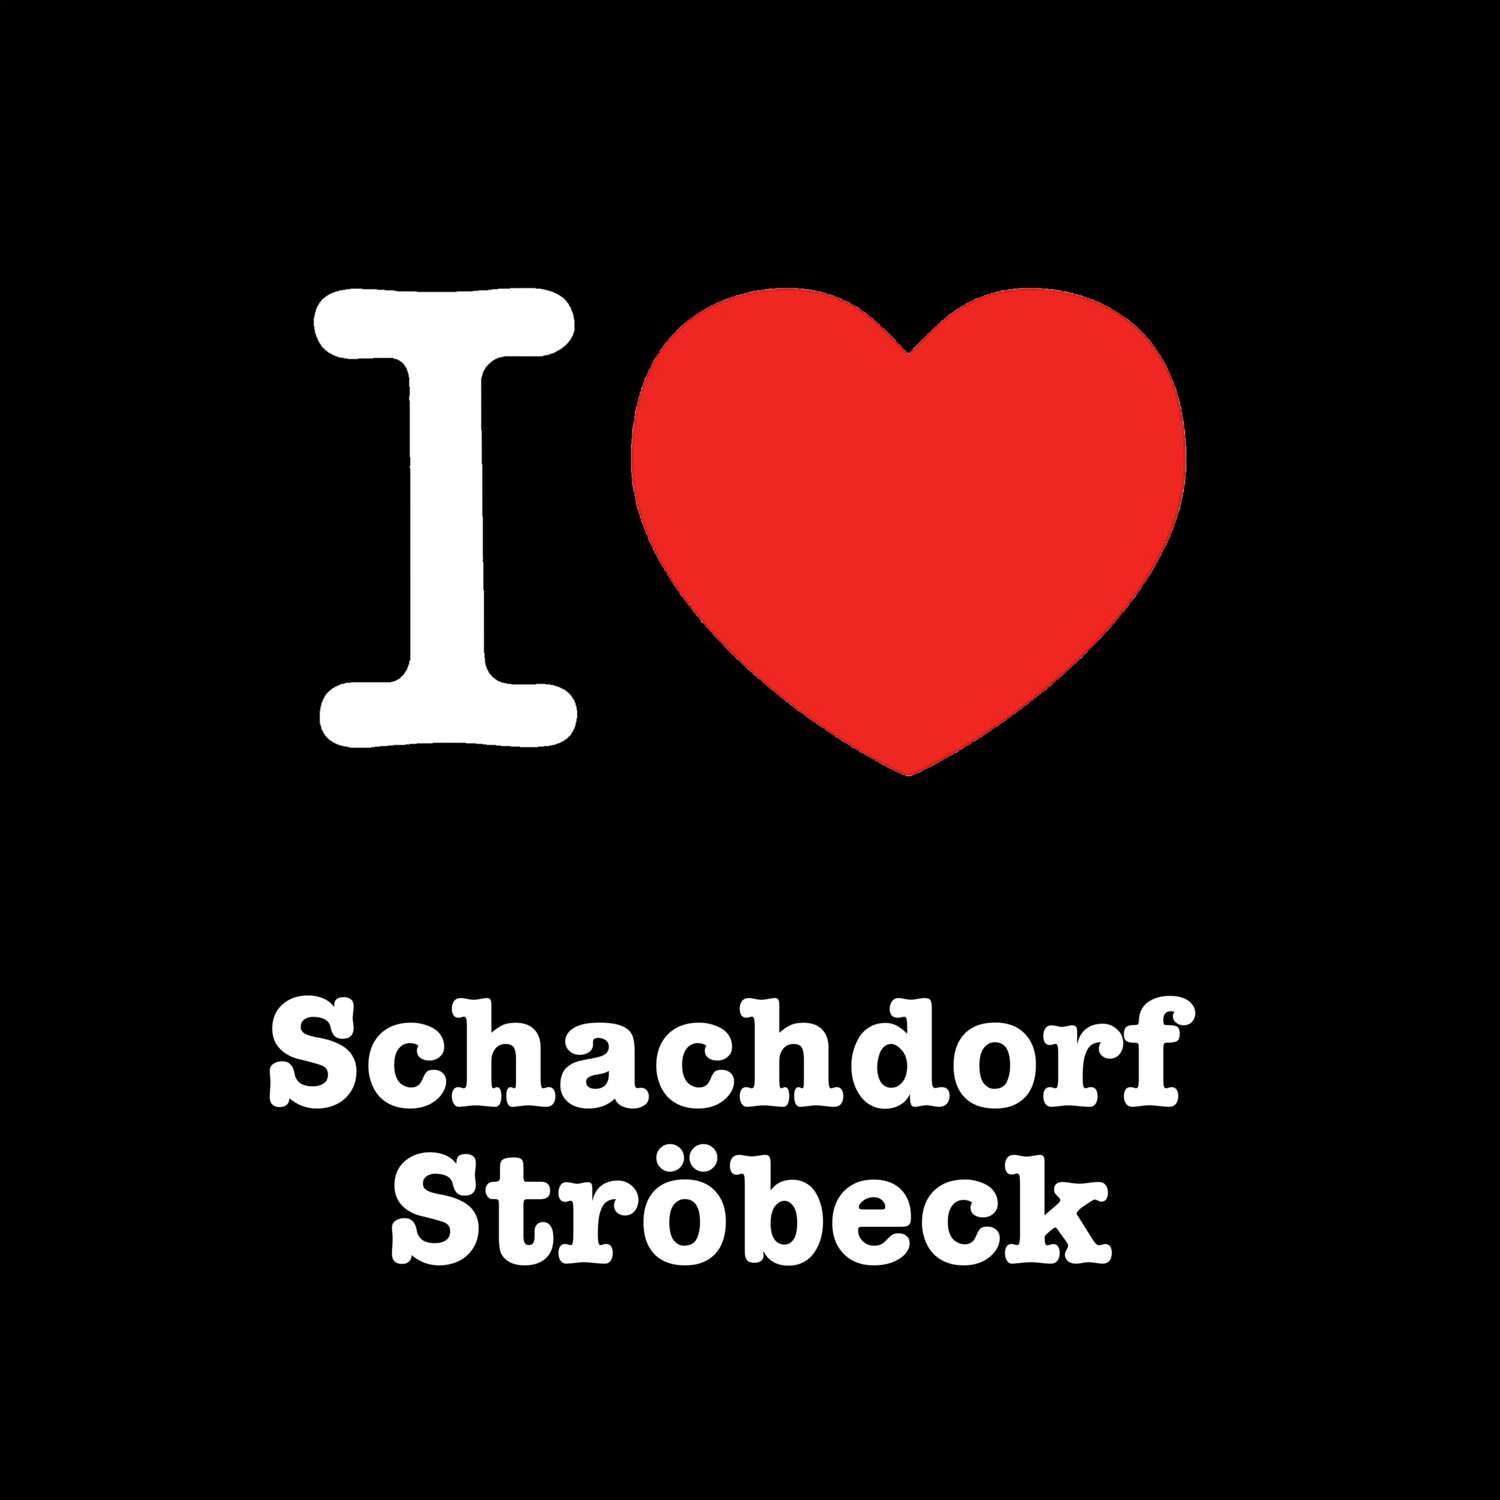 Schachdorf Ströbeck T-Shirt »I love«